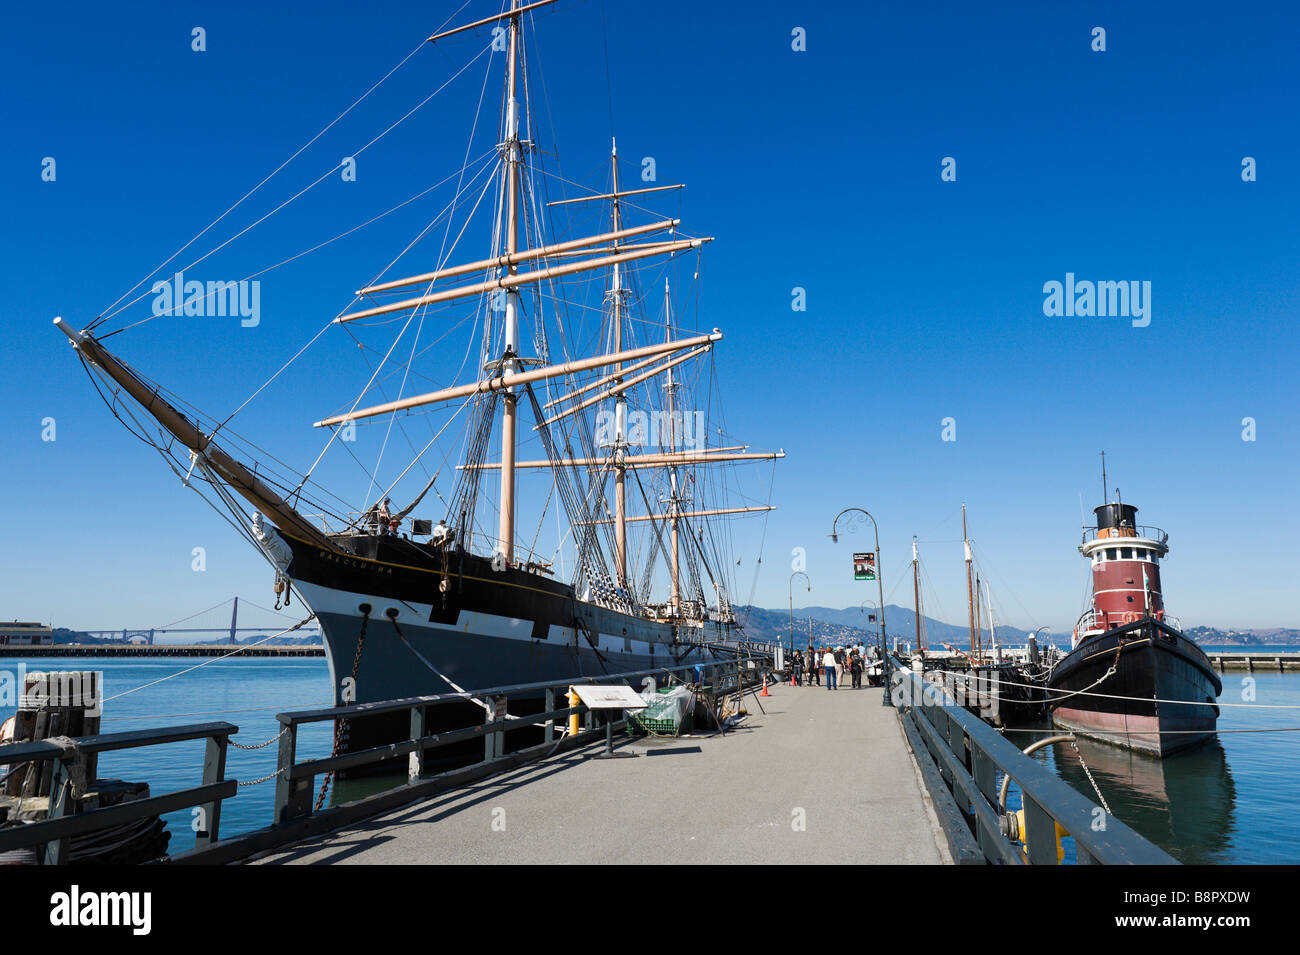 Le 19ème siècle coque acier Balclutha voilier au Maritime Museum, Hyde Street Pier, San Francisco, California, USA Banque D'Images